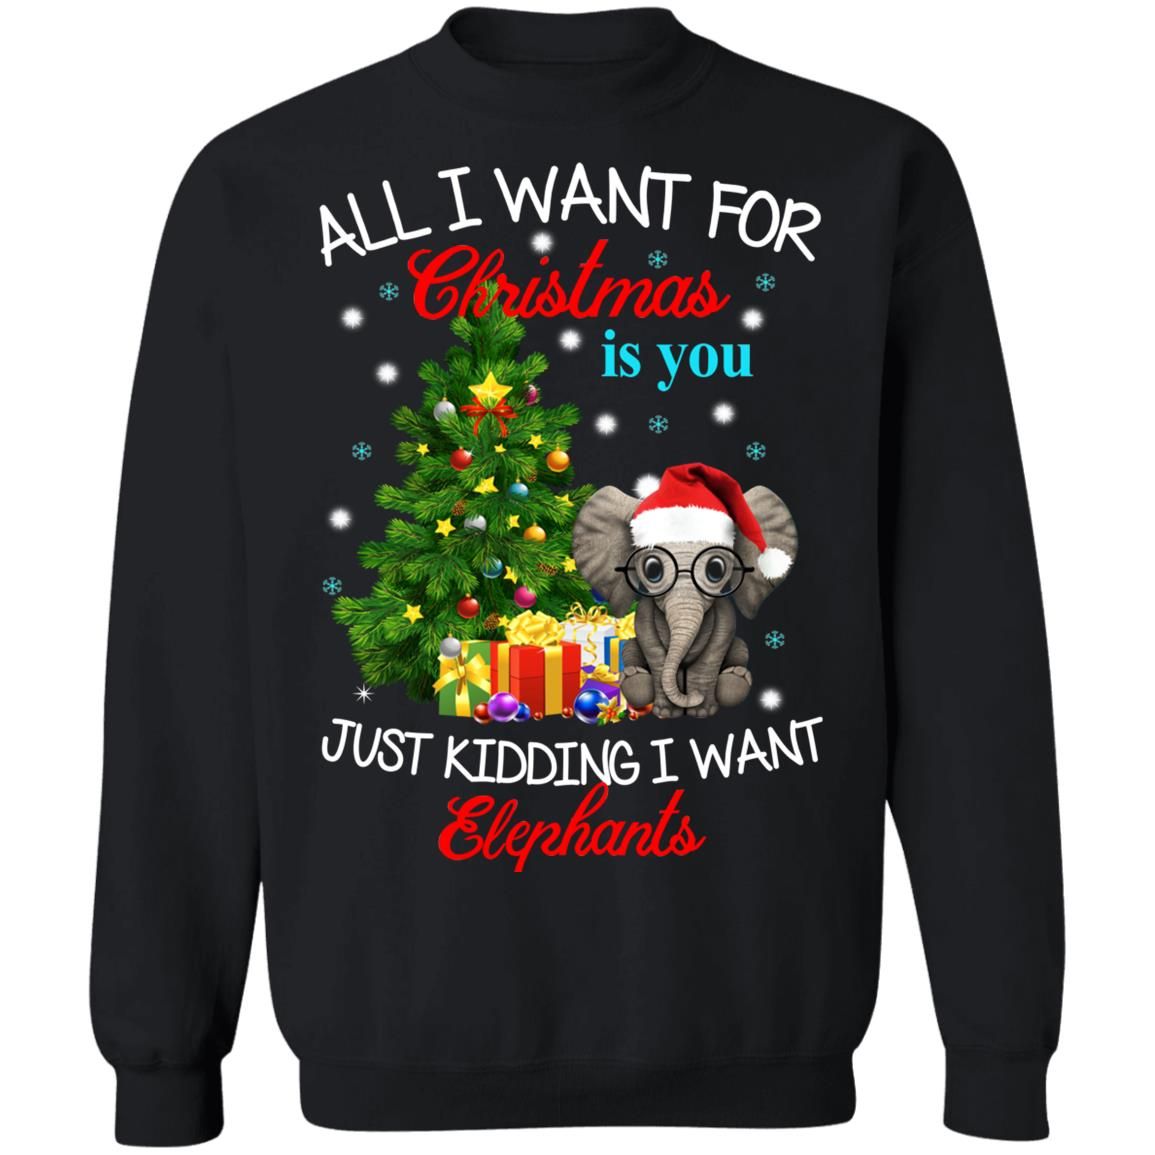 All I Want For Christmas Is You Just Kidding I Want Elephants Christmas Sweatshirt Style: Sweatshirt, Color: Black